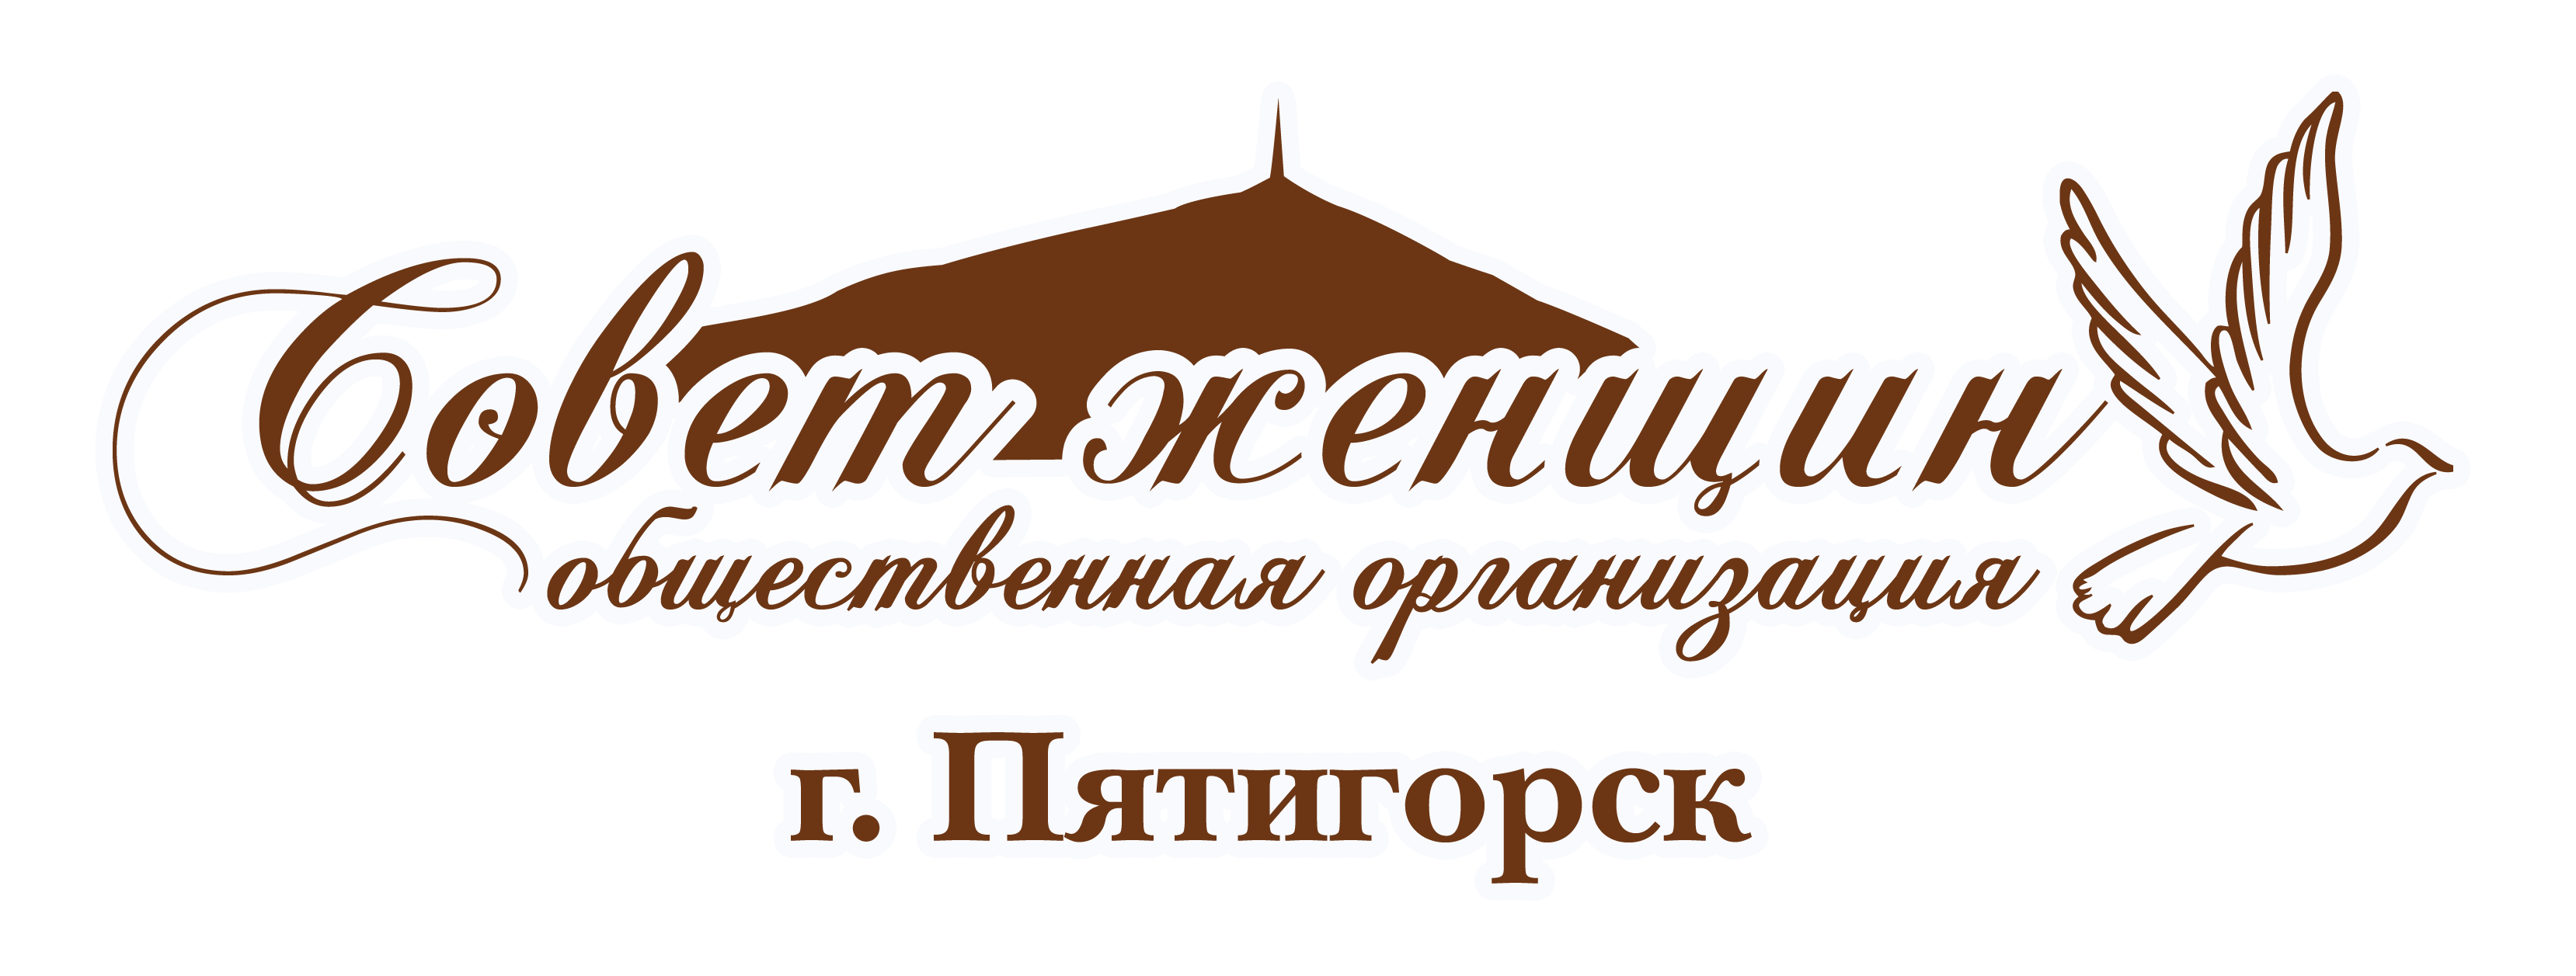 Совет женщин города Пятигорска